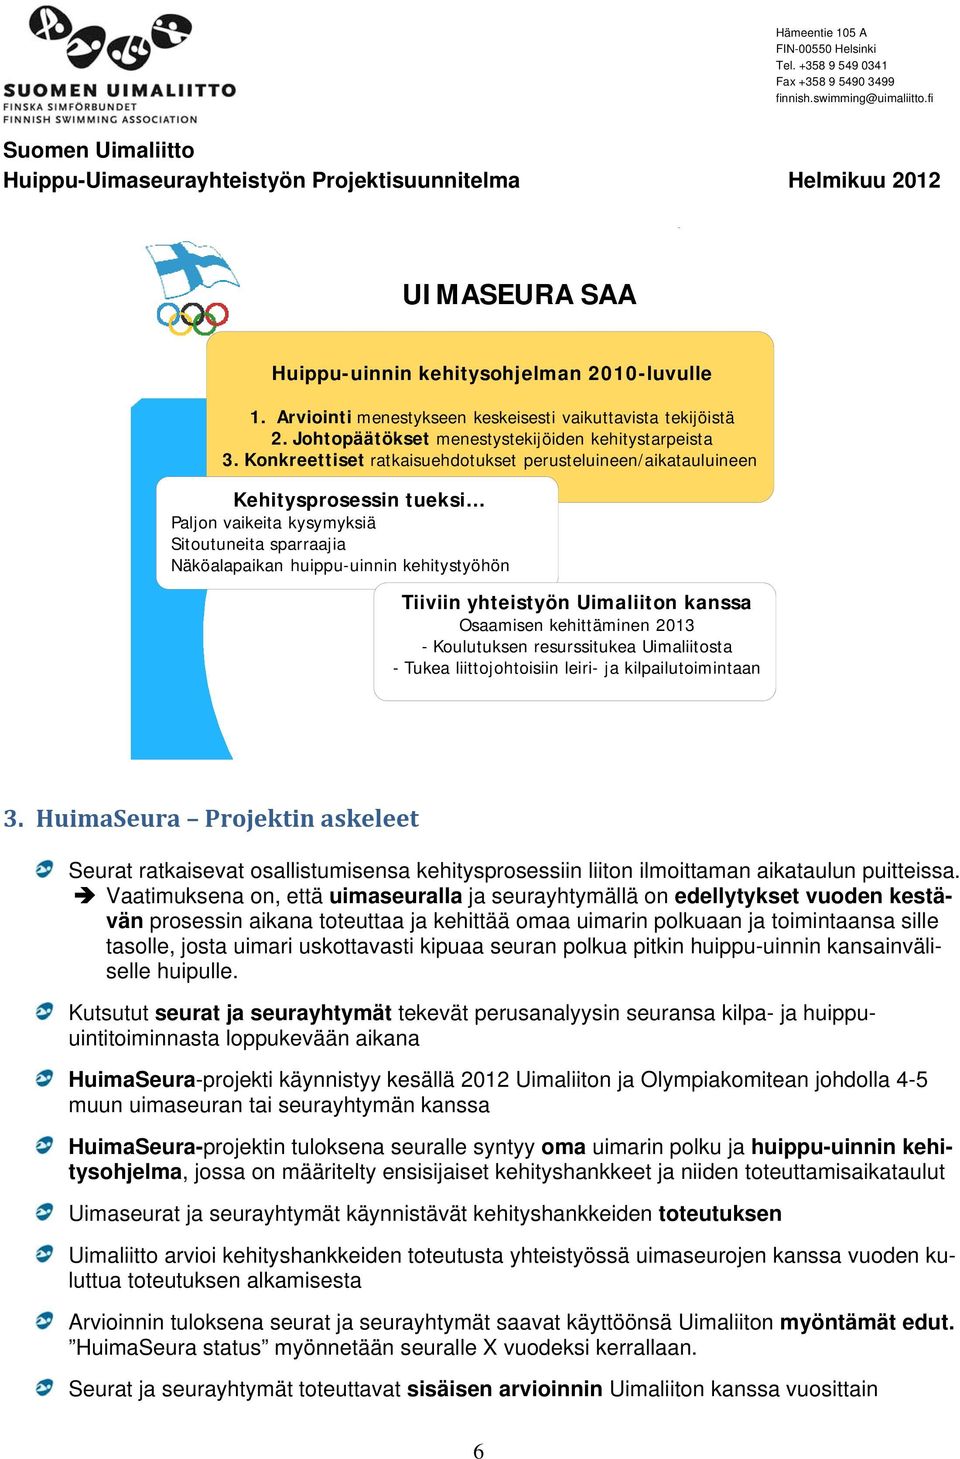 Uimaliiton kanssa Osaamisen kehittäminen 2013 - Koulutuksen resurssitukea Uimaliitosta - Tukea liittojohtoisiin leiri- ja kilpailutoimintaan 3.